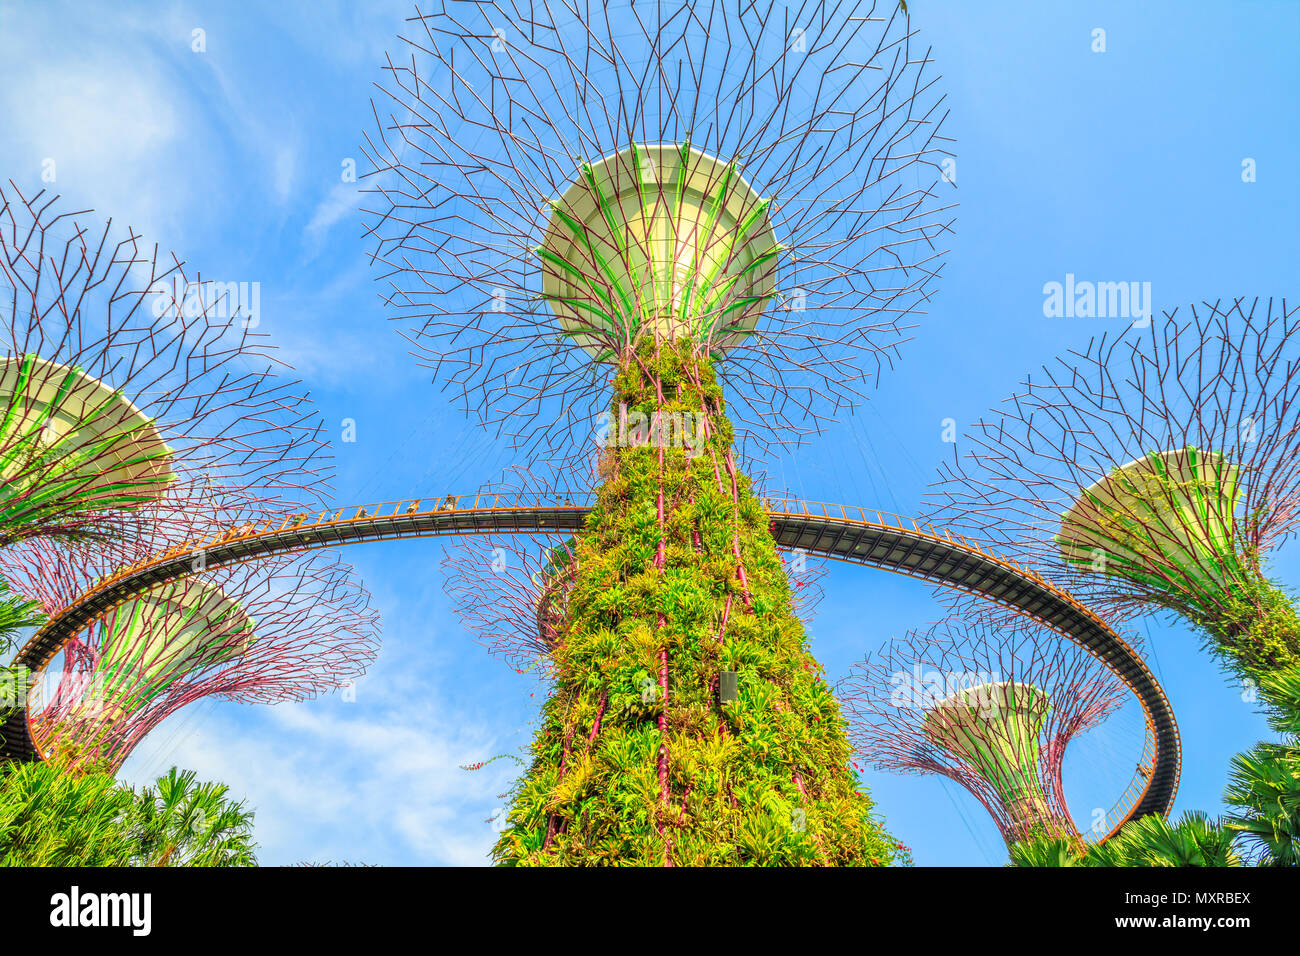 Singapore - Aprile 29, 2018: vista dal basso del Supertree Grove con ponte sopraelevato a Giardini in baia su una bella giornata di sole con cielo blu. Famosa attrazione turistica in area di Marina Bay, Singapore. Foto Stock